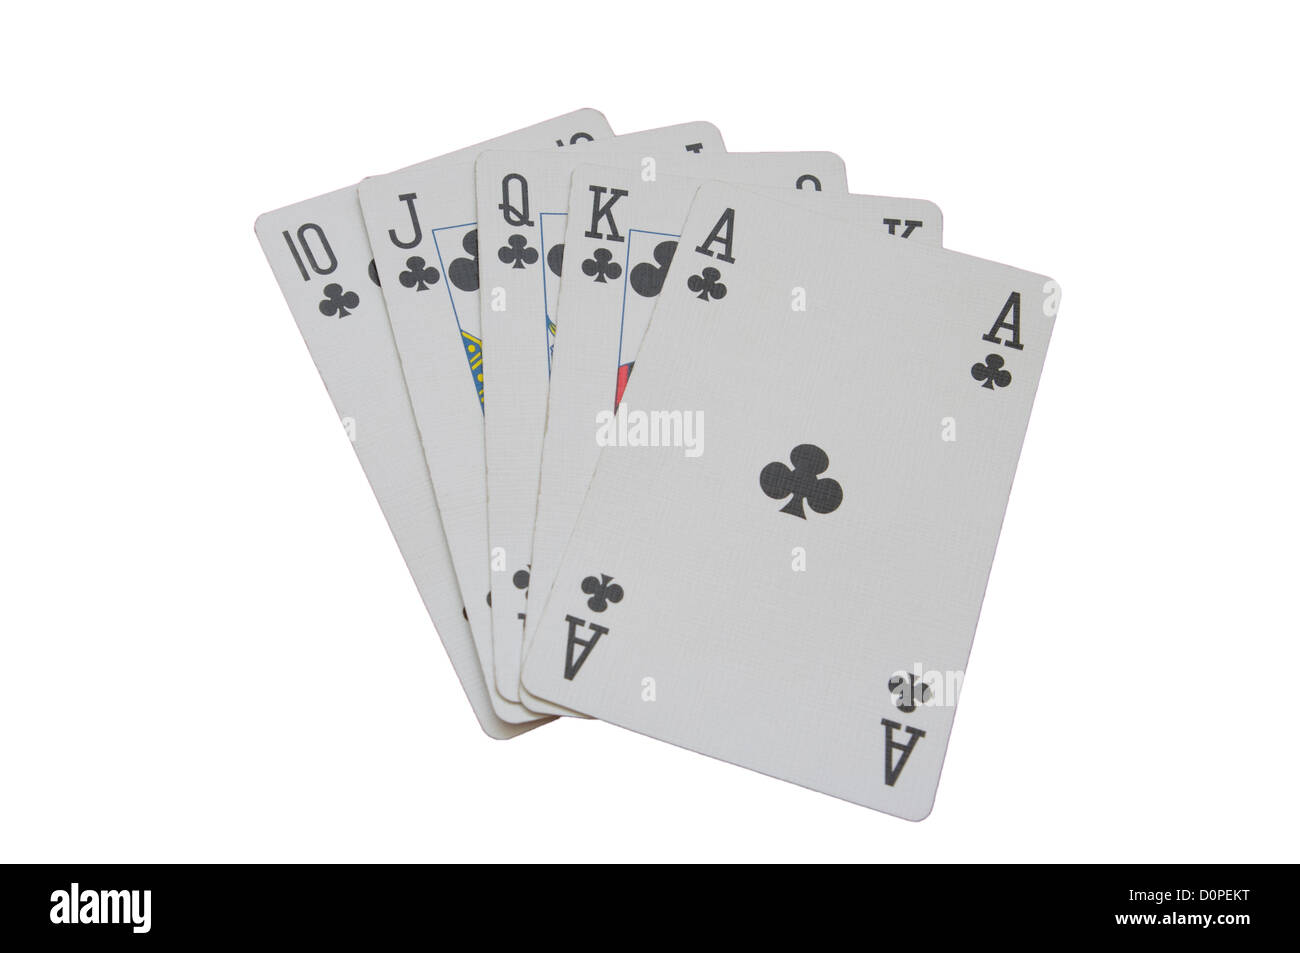 Royal Flush Poker Karten Gürtelschnalle mit Feuerzeug UND Ledergürtel / Karten  Feuerzeug Gürtelschnalle -  Österreich